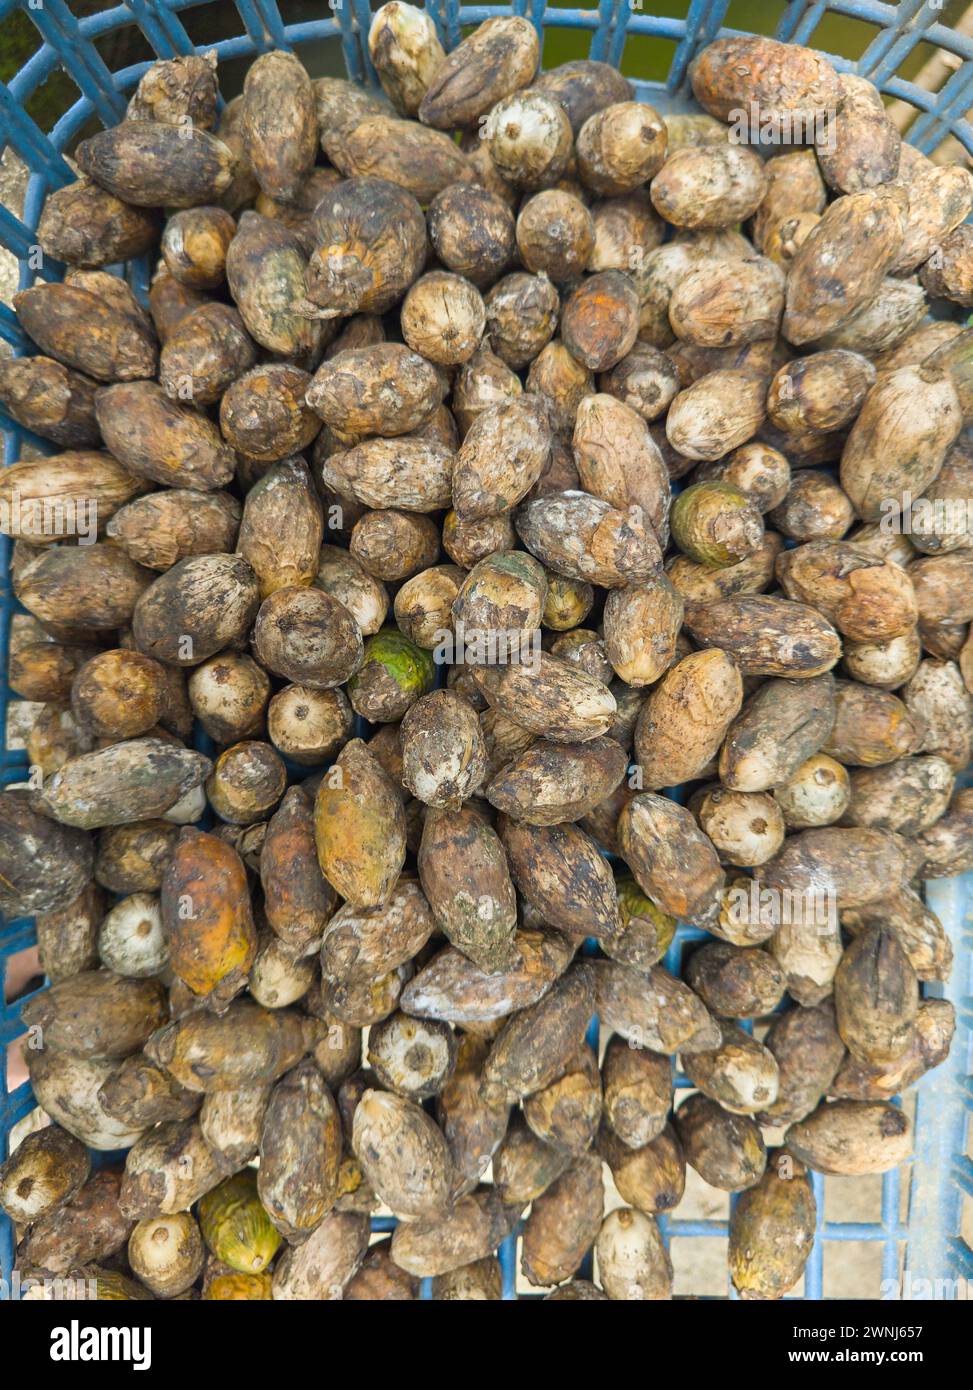 Sonnentrocknende Areca-Nüsse, Früchte der Areca-Palme, Areca-Nuss-Palme oder Betelpalme, Nahaufnahme tropischer und kommerziell wichtiger Früchte Stockfoto